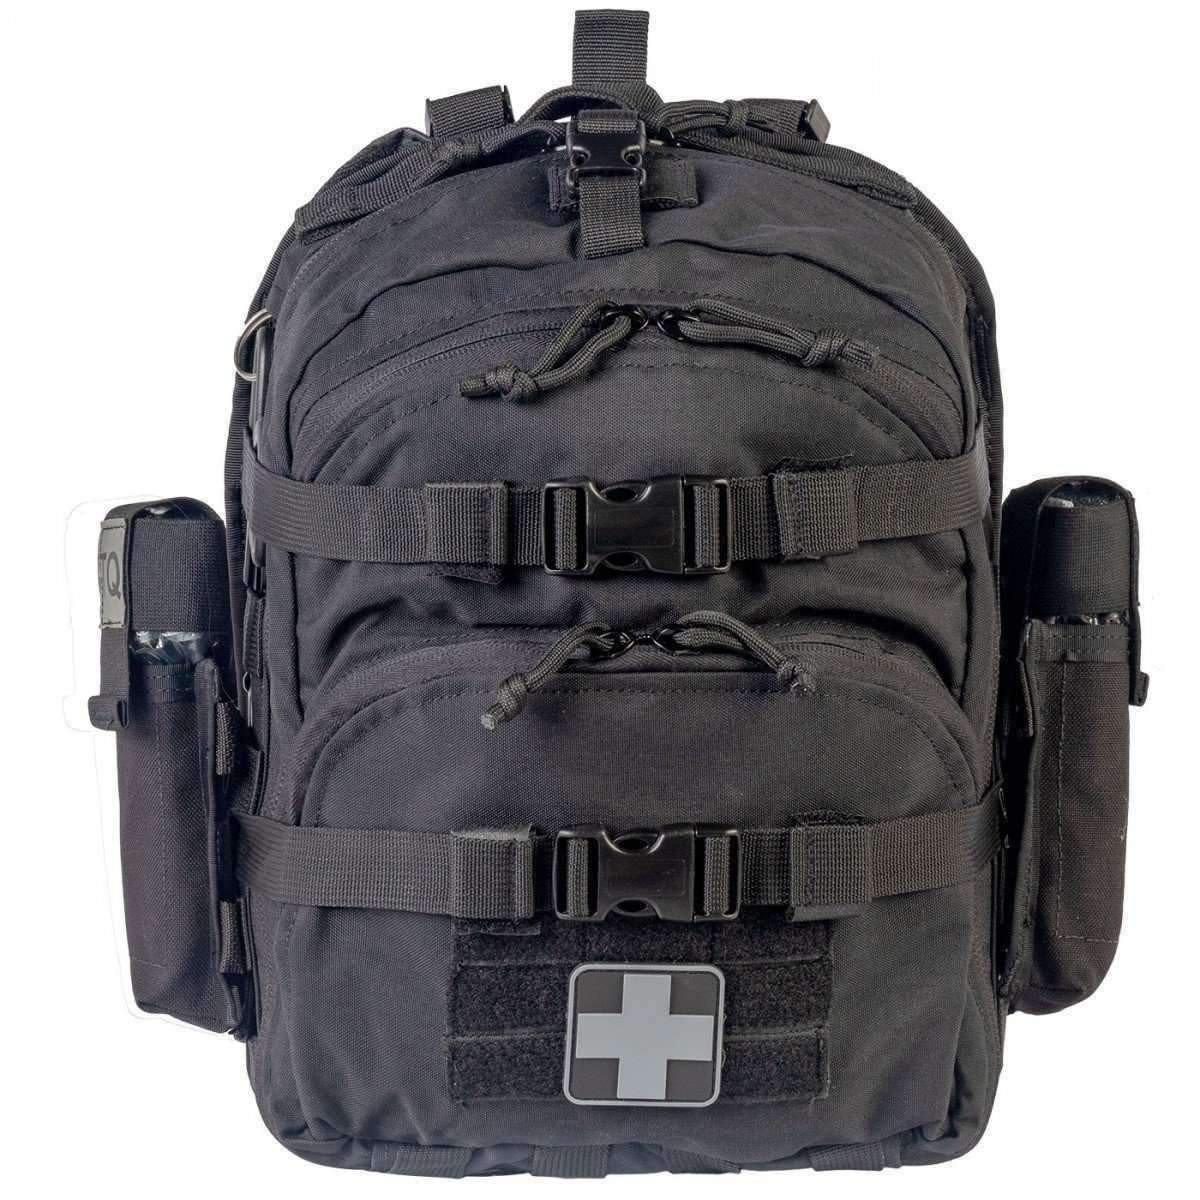 Mini-Medic Bag - Vendor